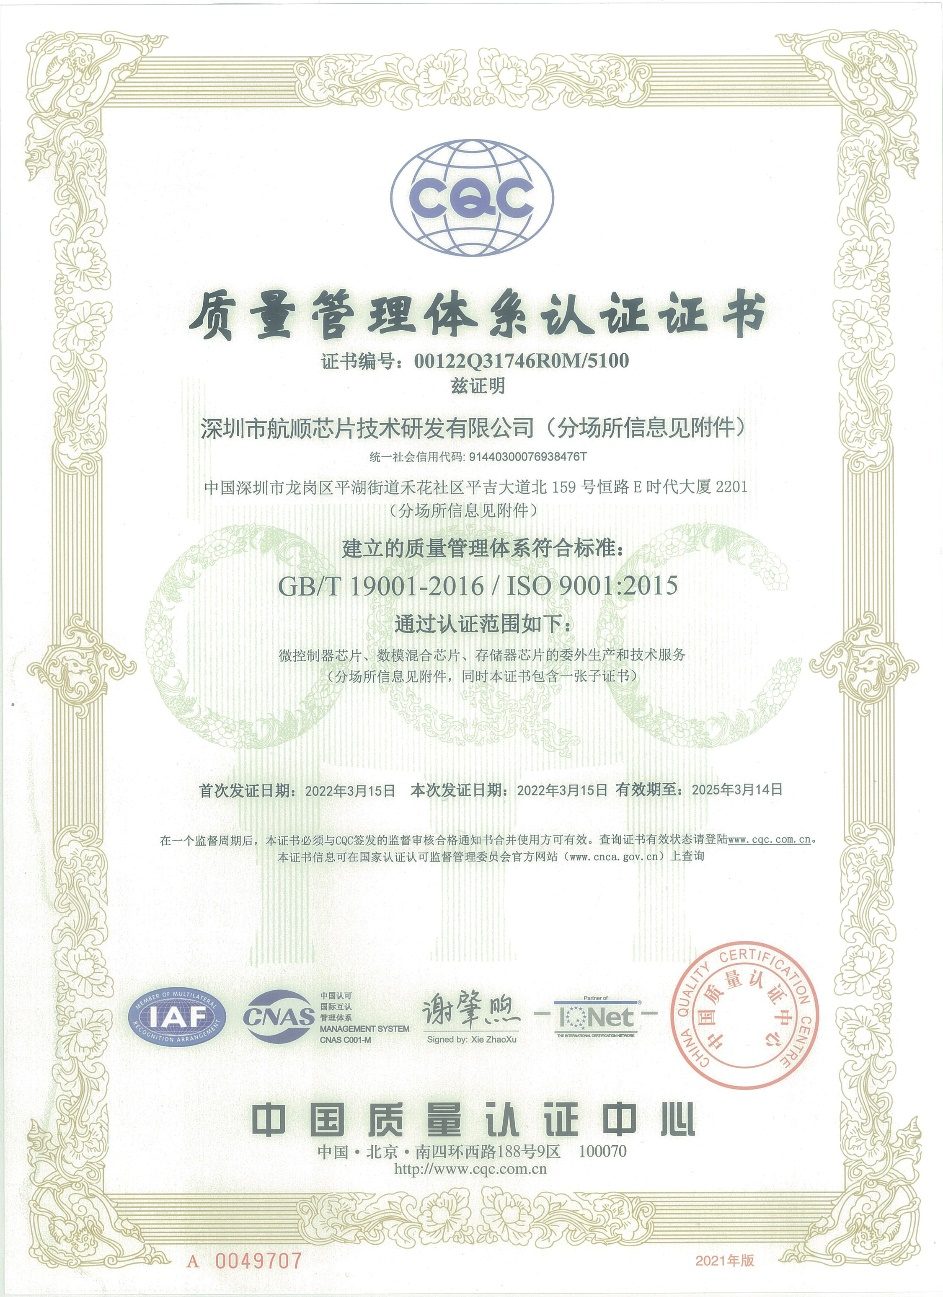 “深圳市航顺芯片技术研发有限公司ISO9001:2015证书"